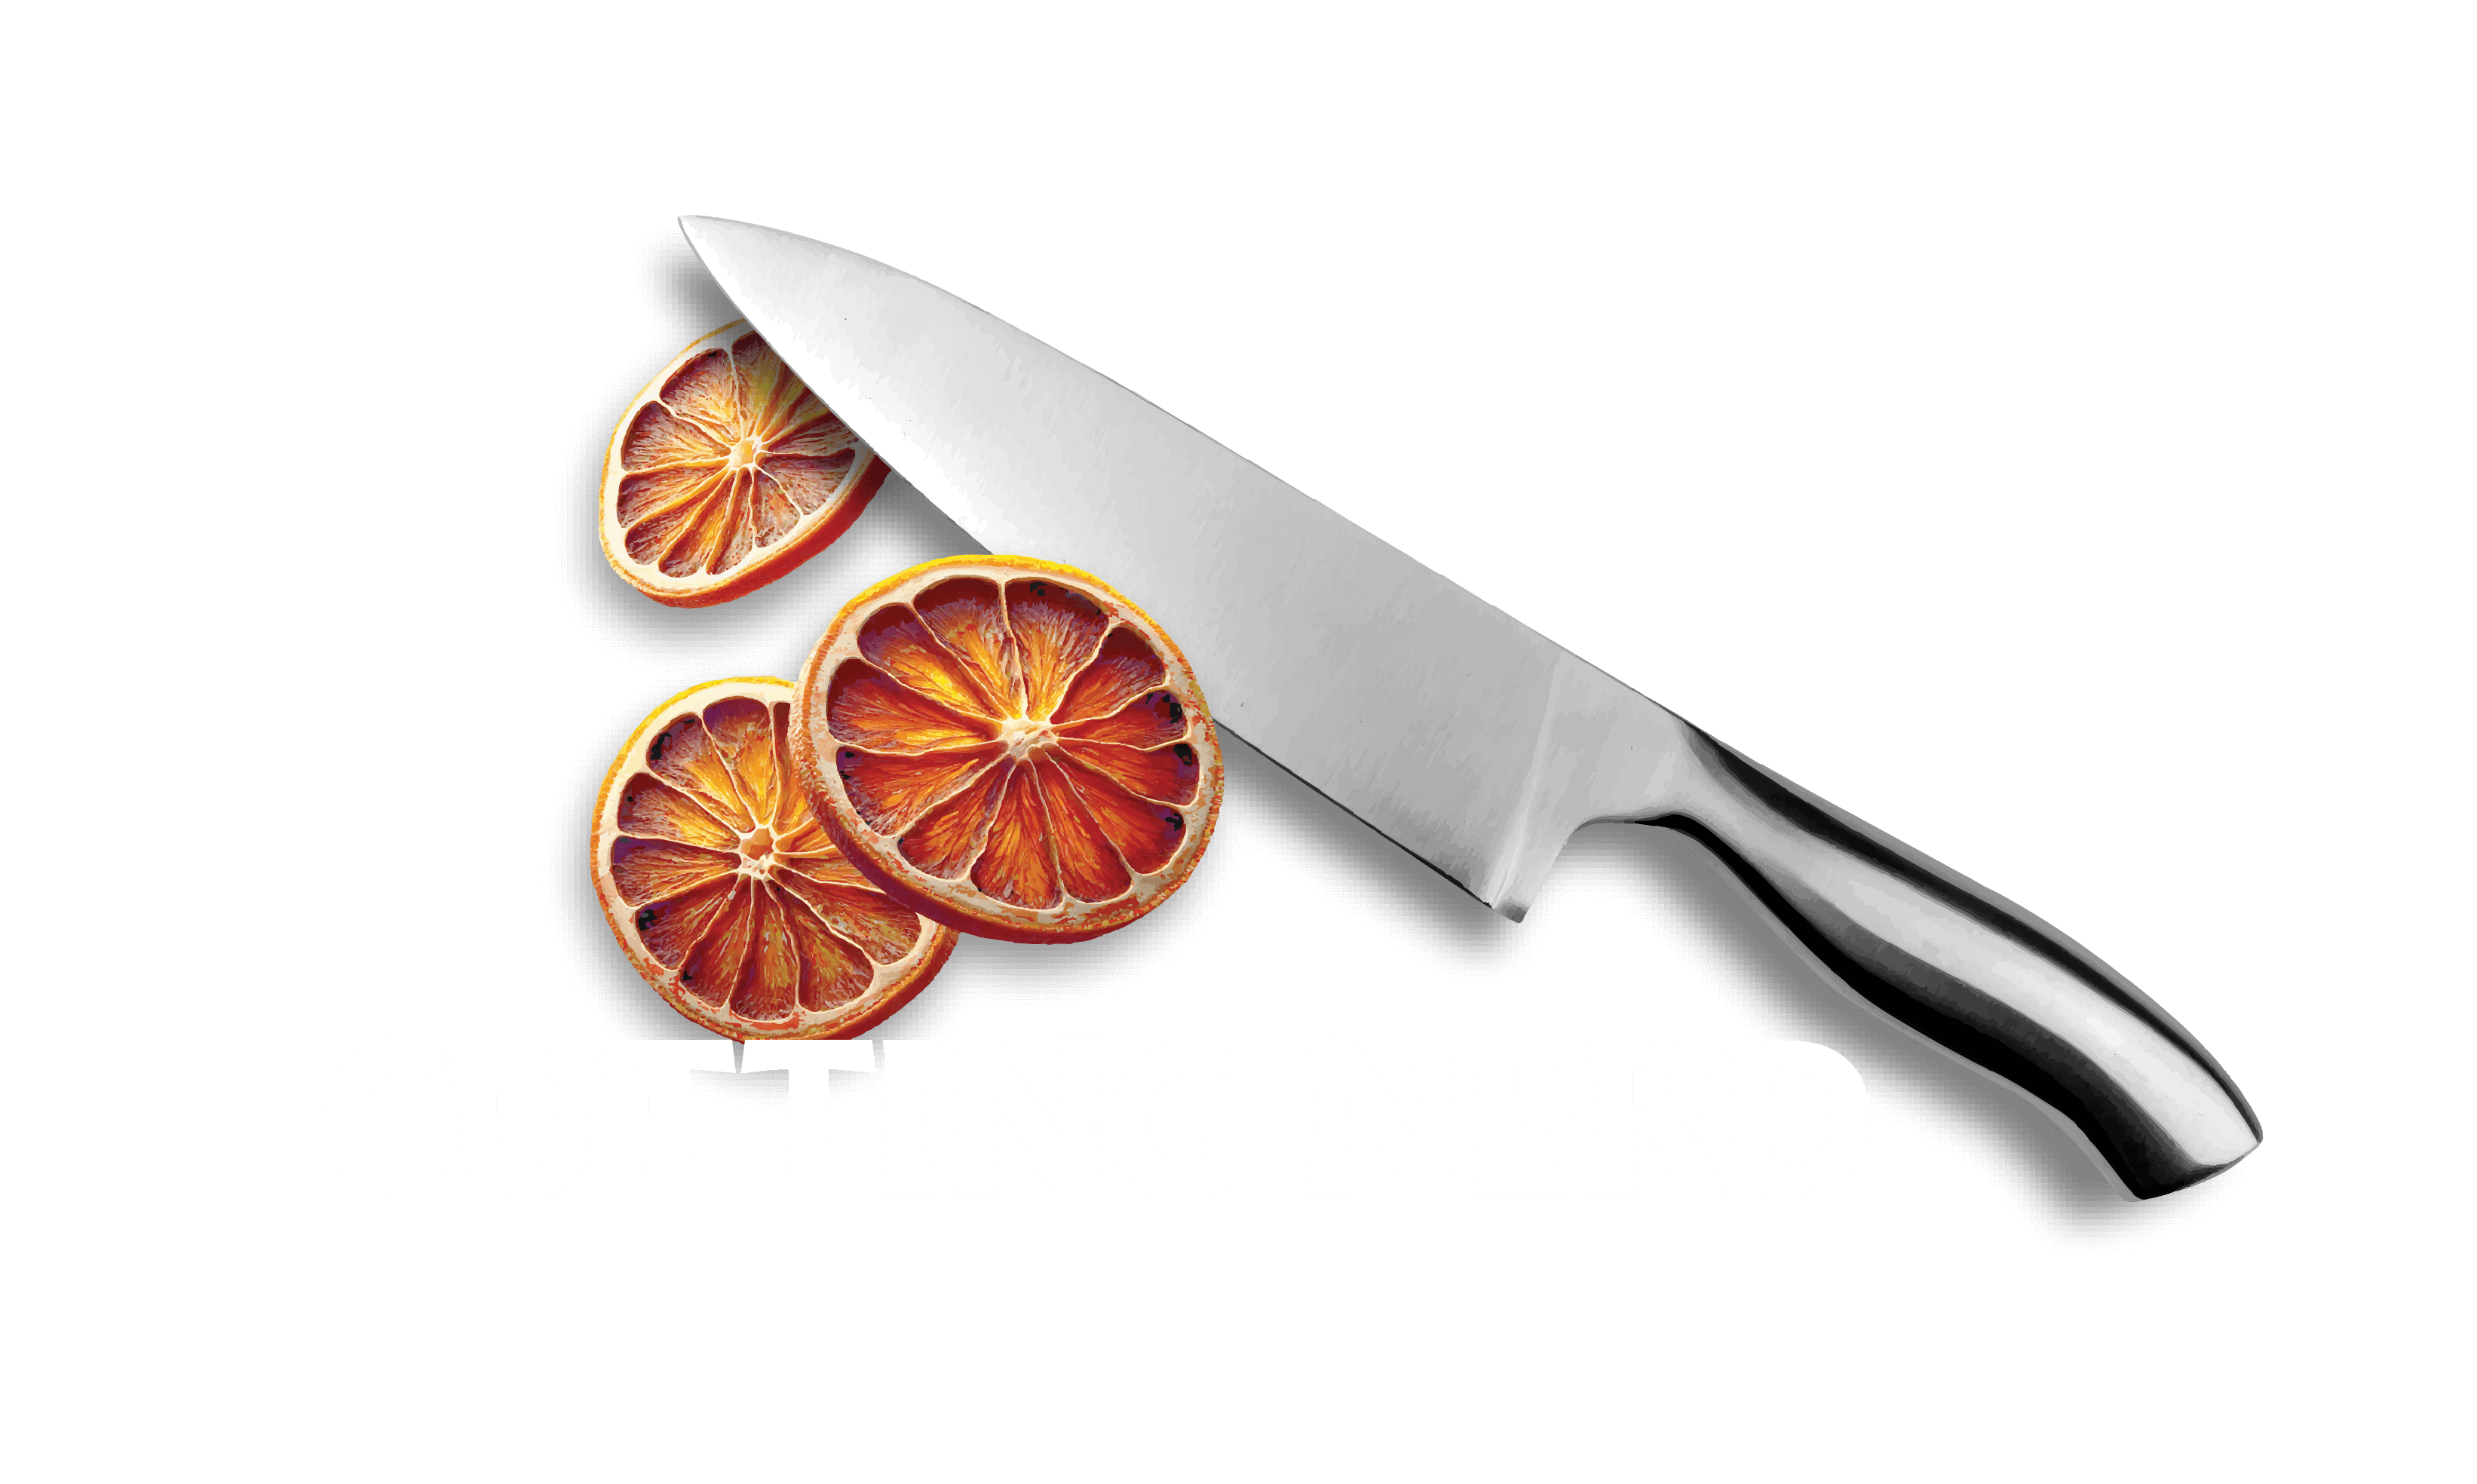 Cutting nerd